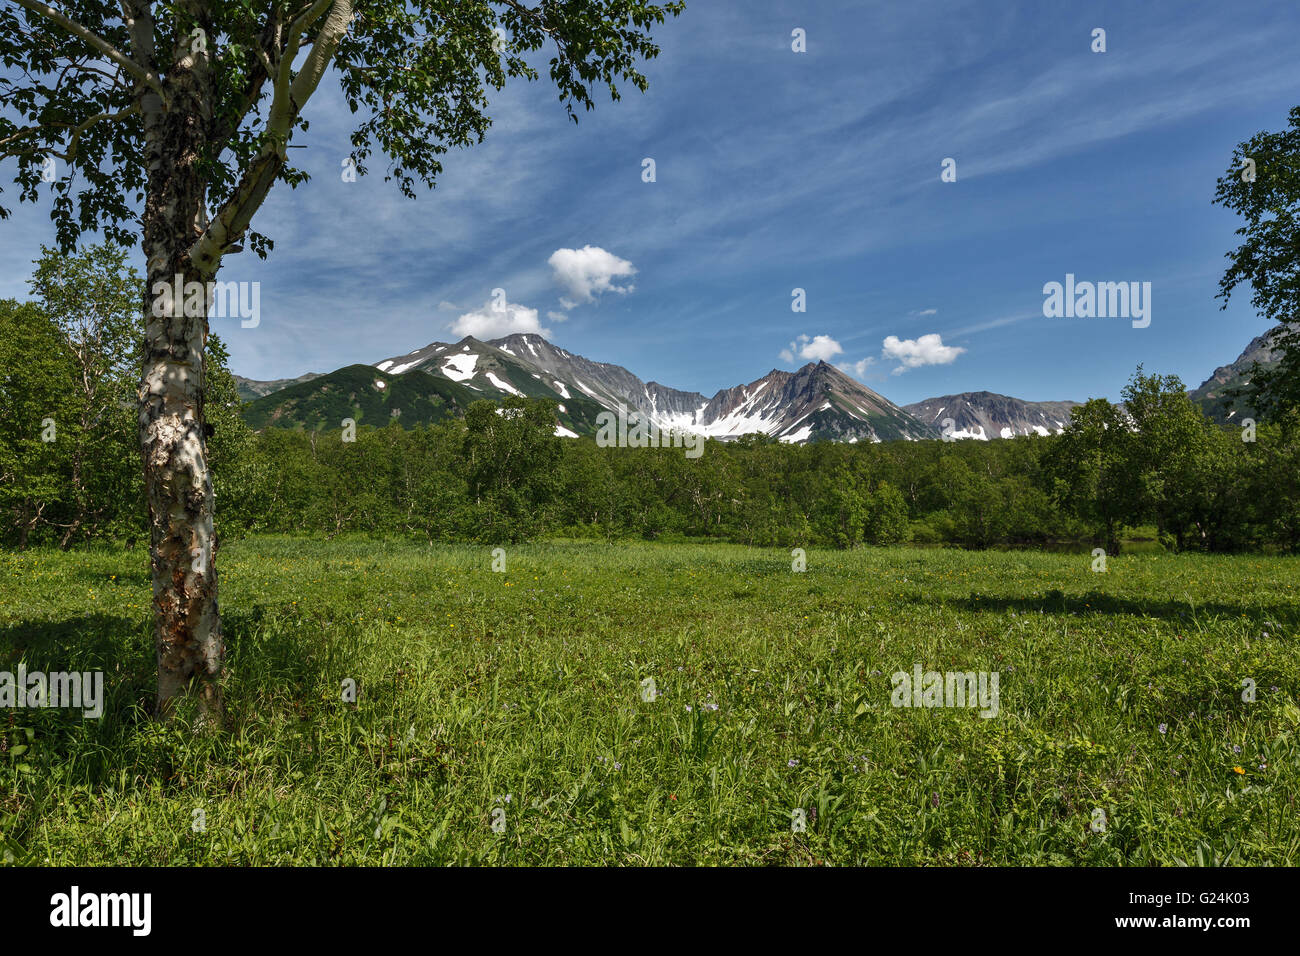 Nature de la péninsule du Kamtchatka : beau paysage d'été avec vue sur la montagne sur une journée ensoleillée. Extrême-Orient russe, région du Kamchatka. Banque D'Images